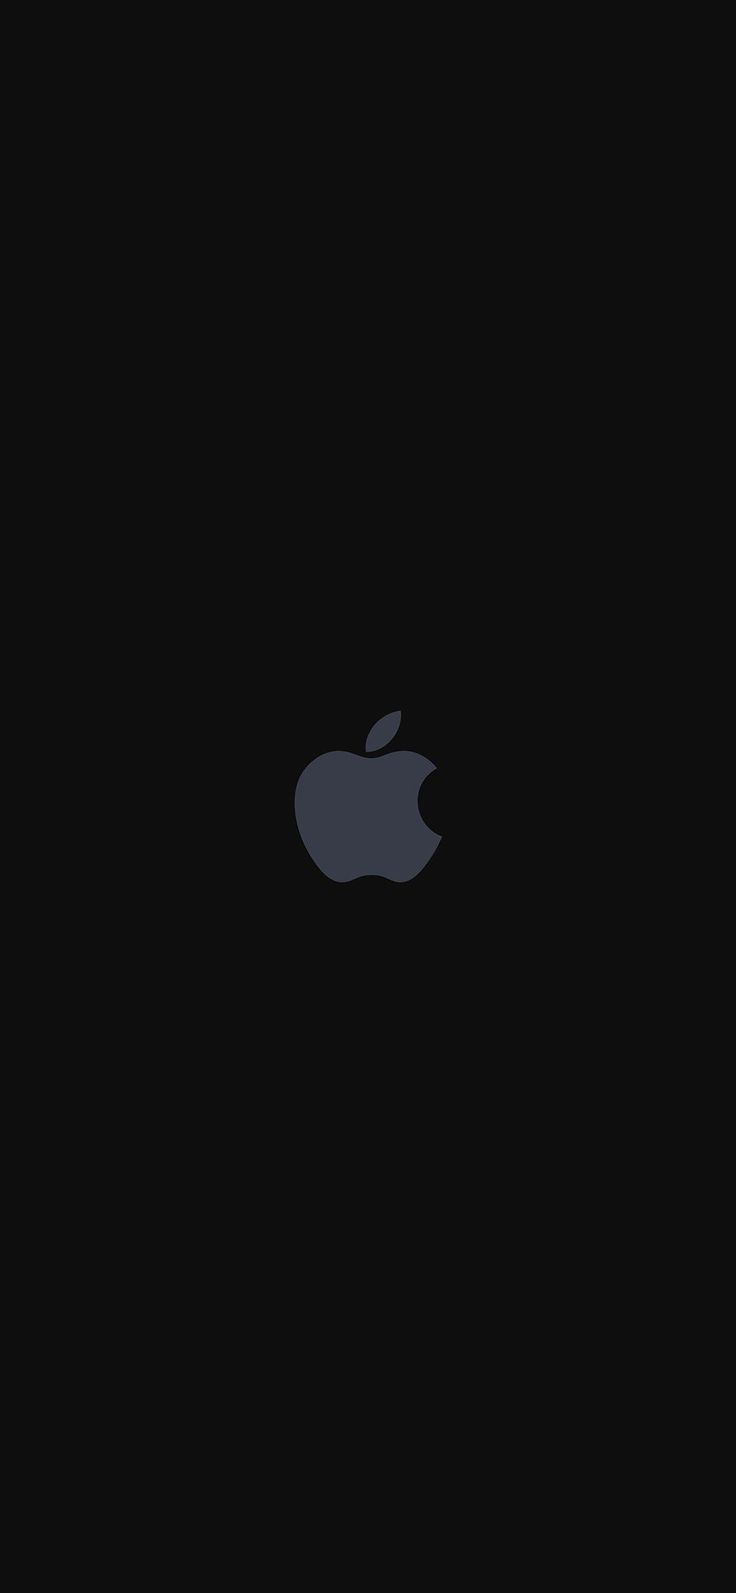 Black Apple Wallpaper For iPhone Logo